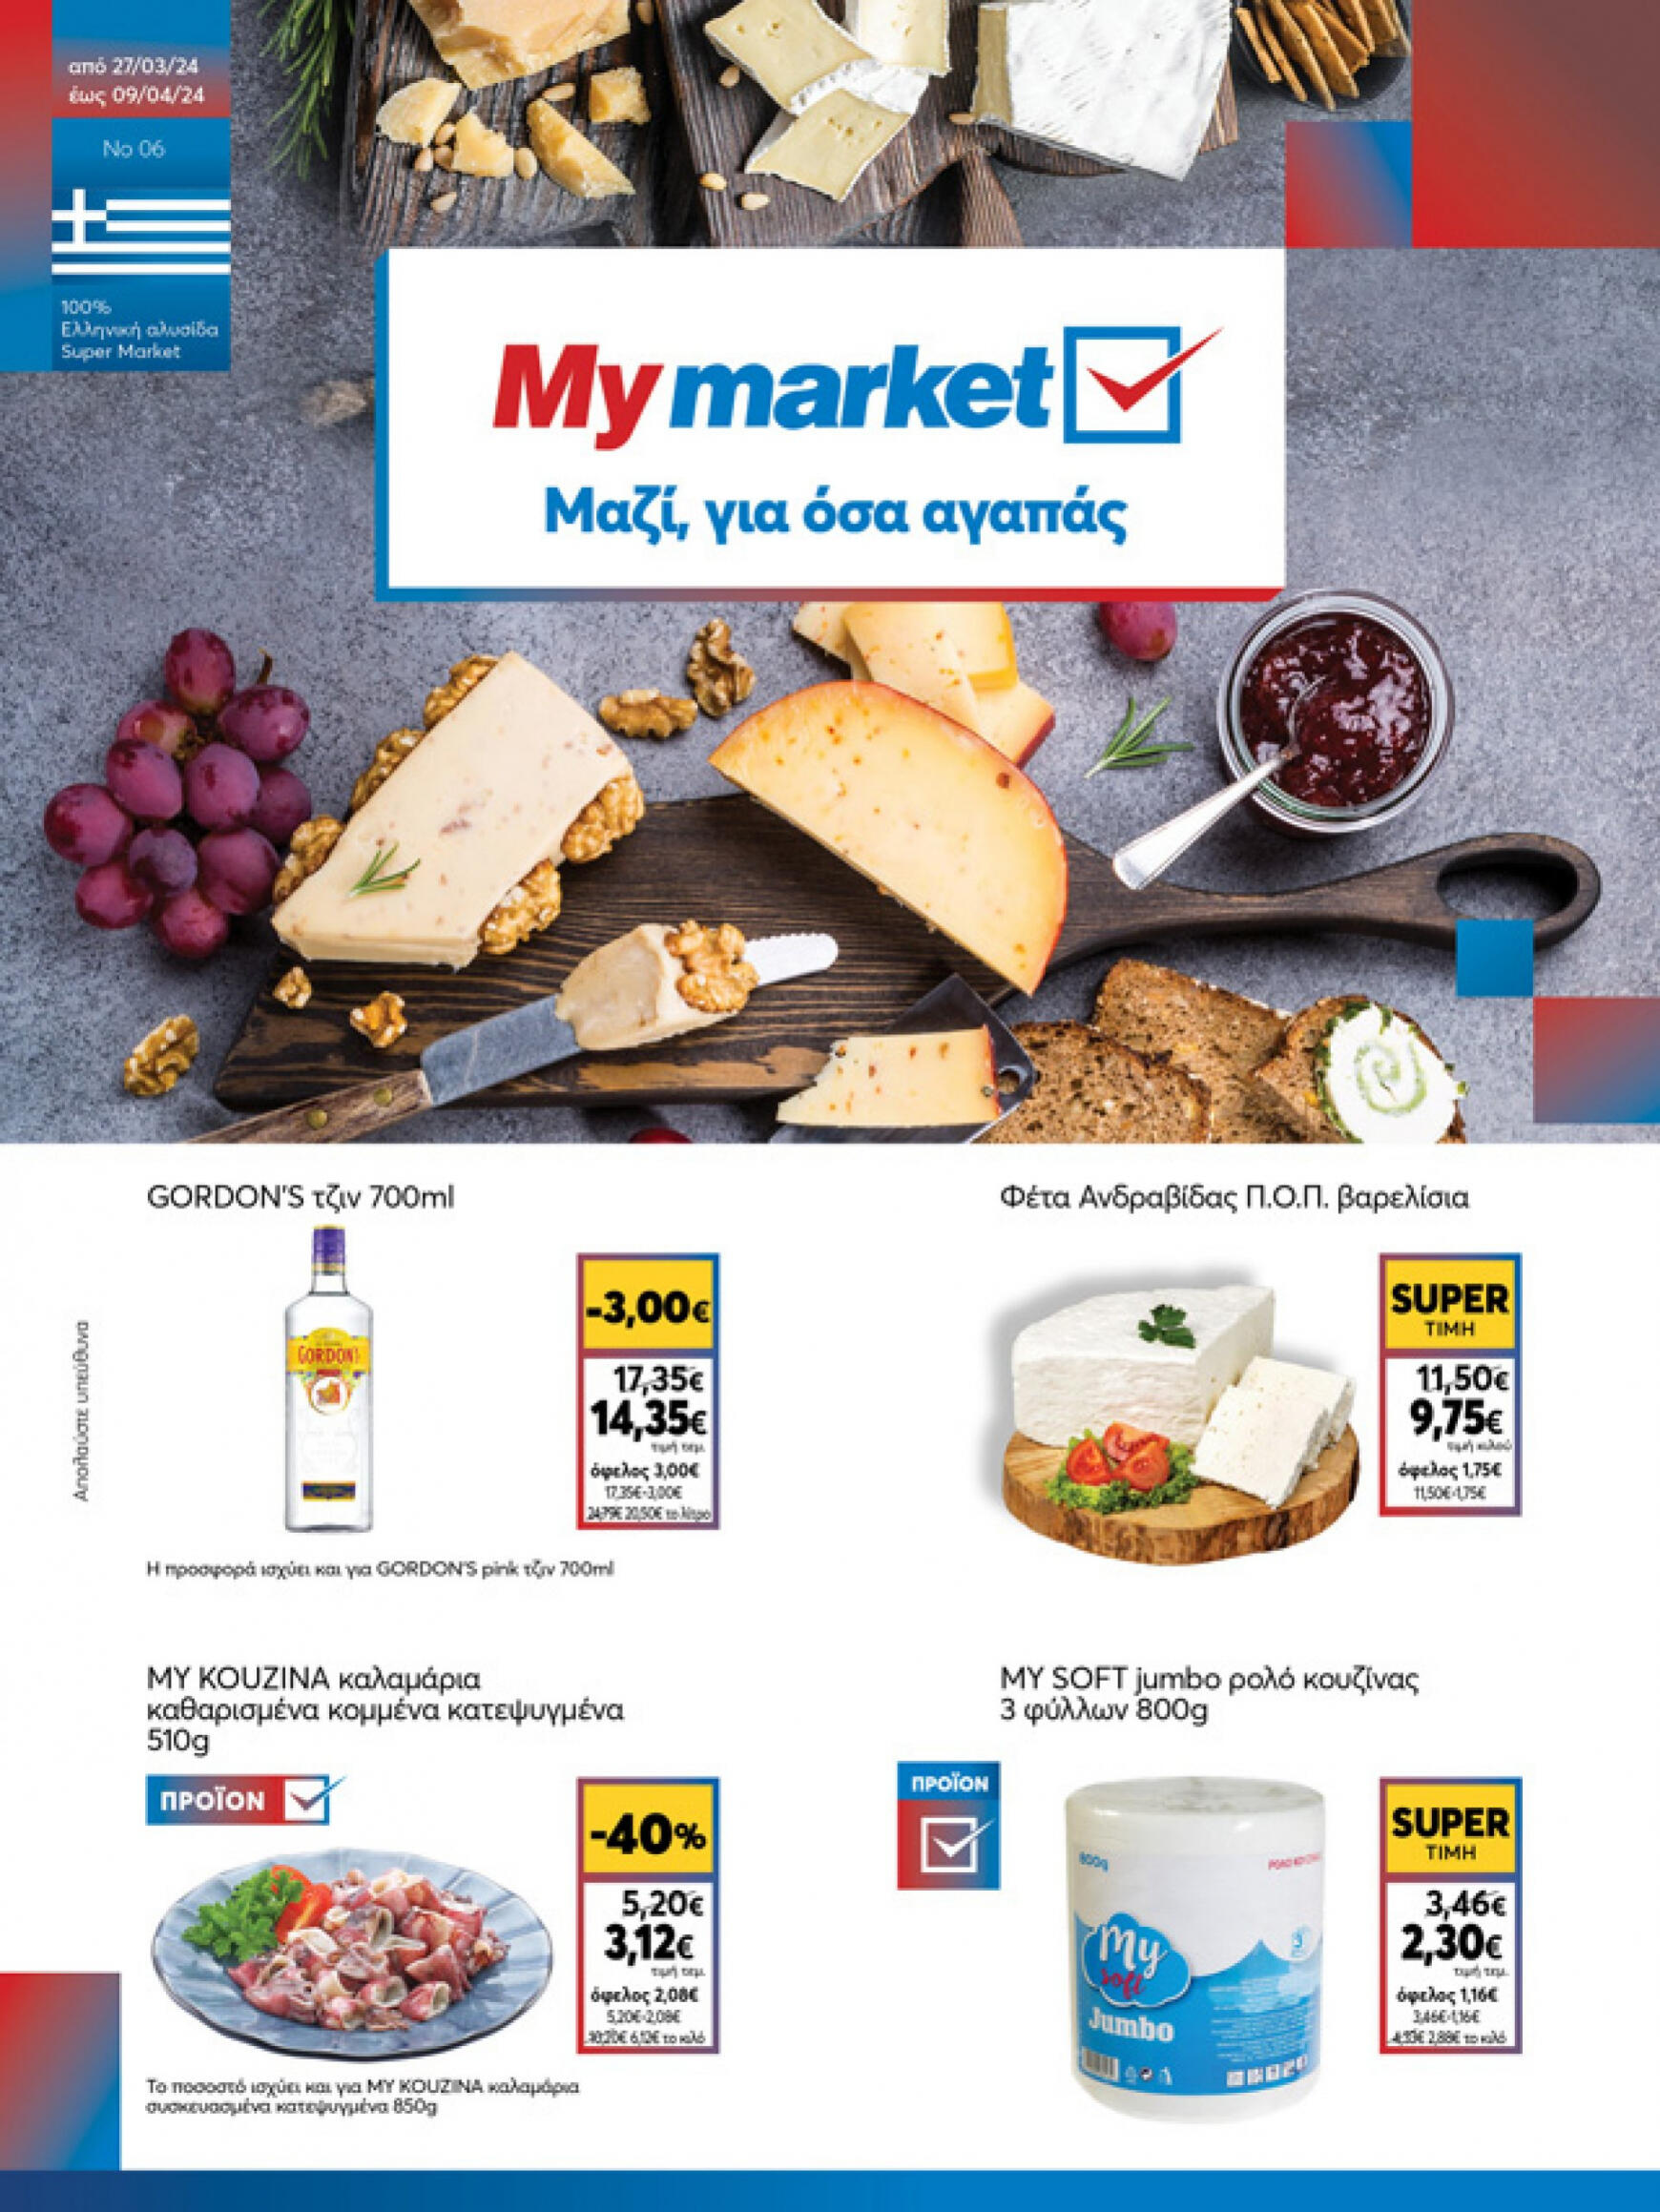 my-market - My Market φυλλάδιο ρεύματος 27/03 - 09/04 - page: 1